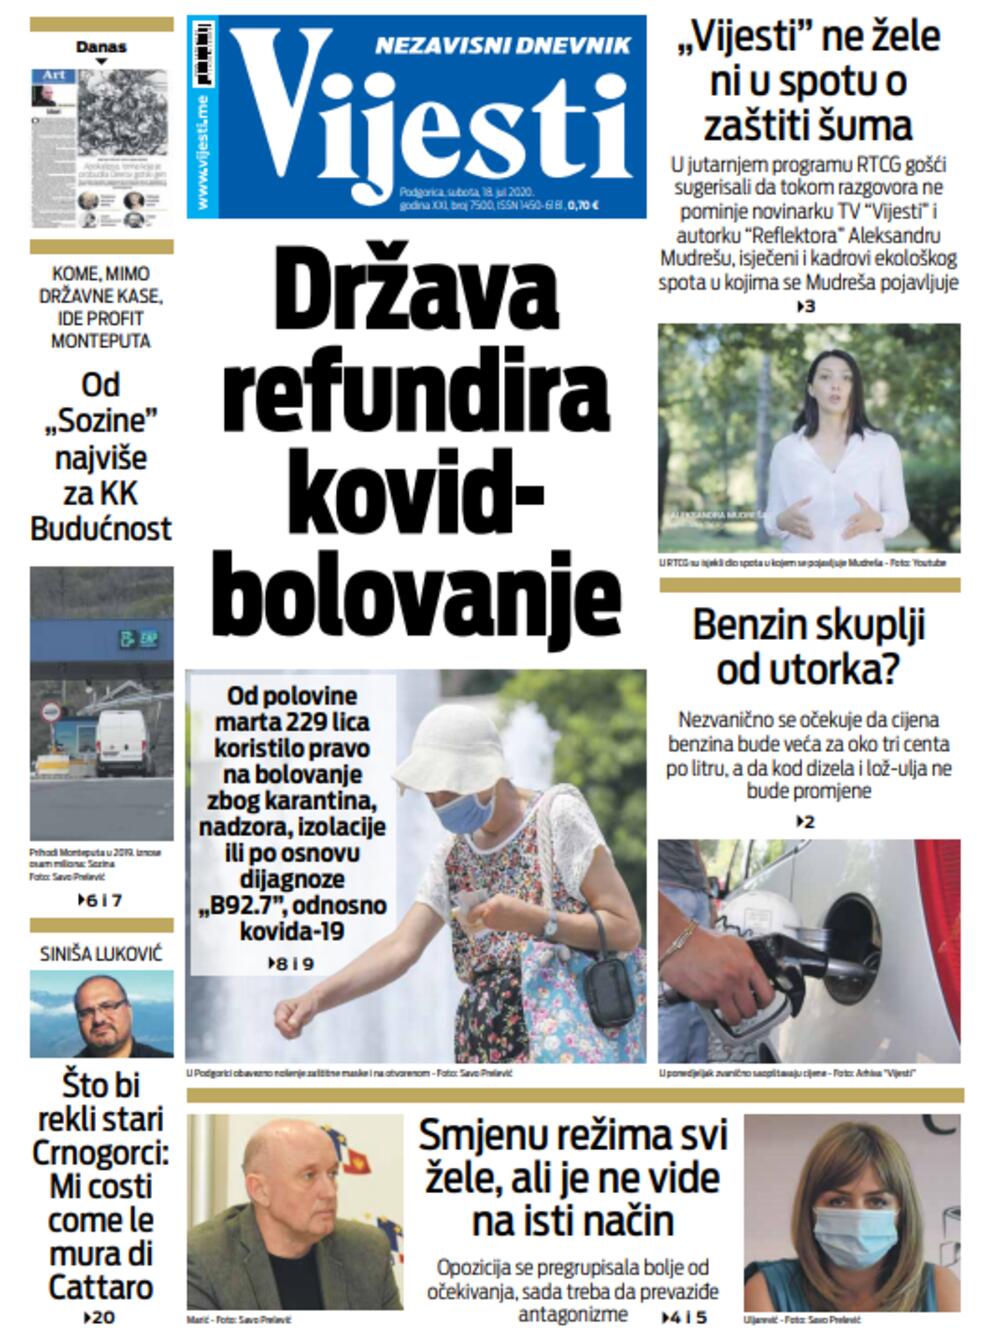 Naslovna strana "Vijesti" za 18. jul, Foto: Vijesti